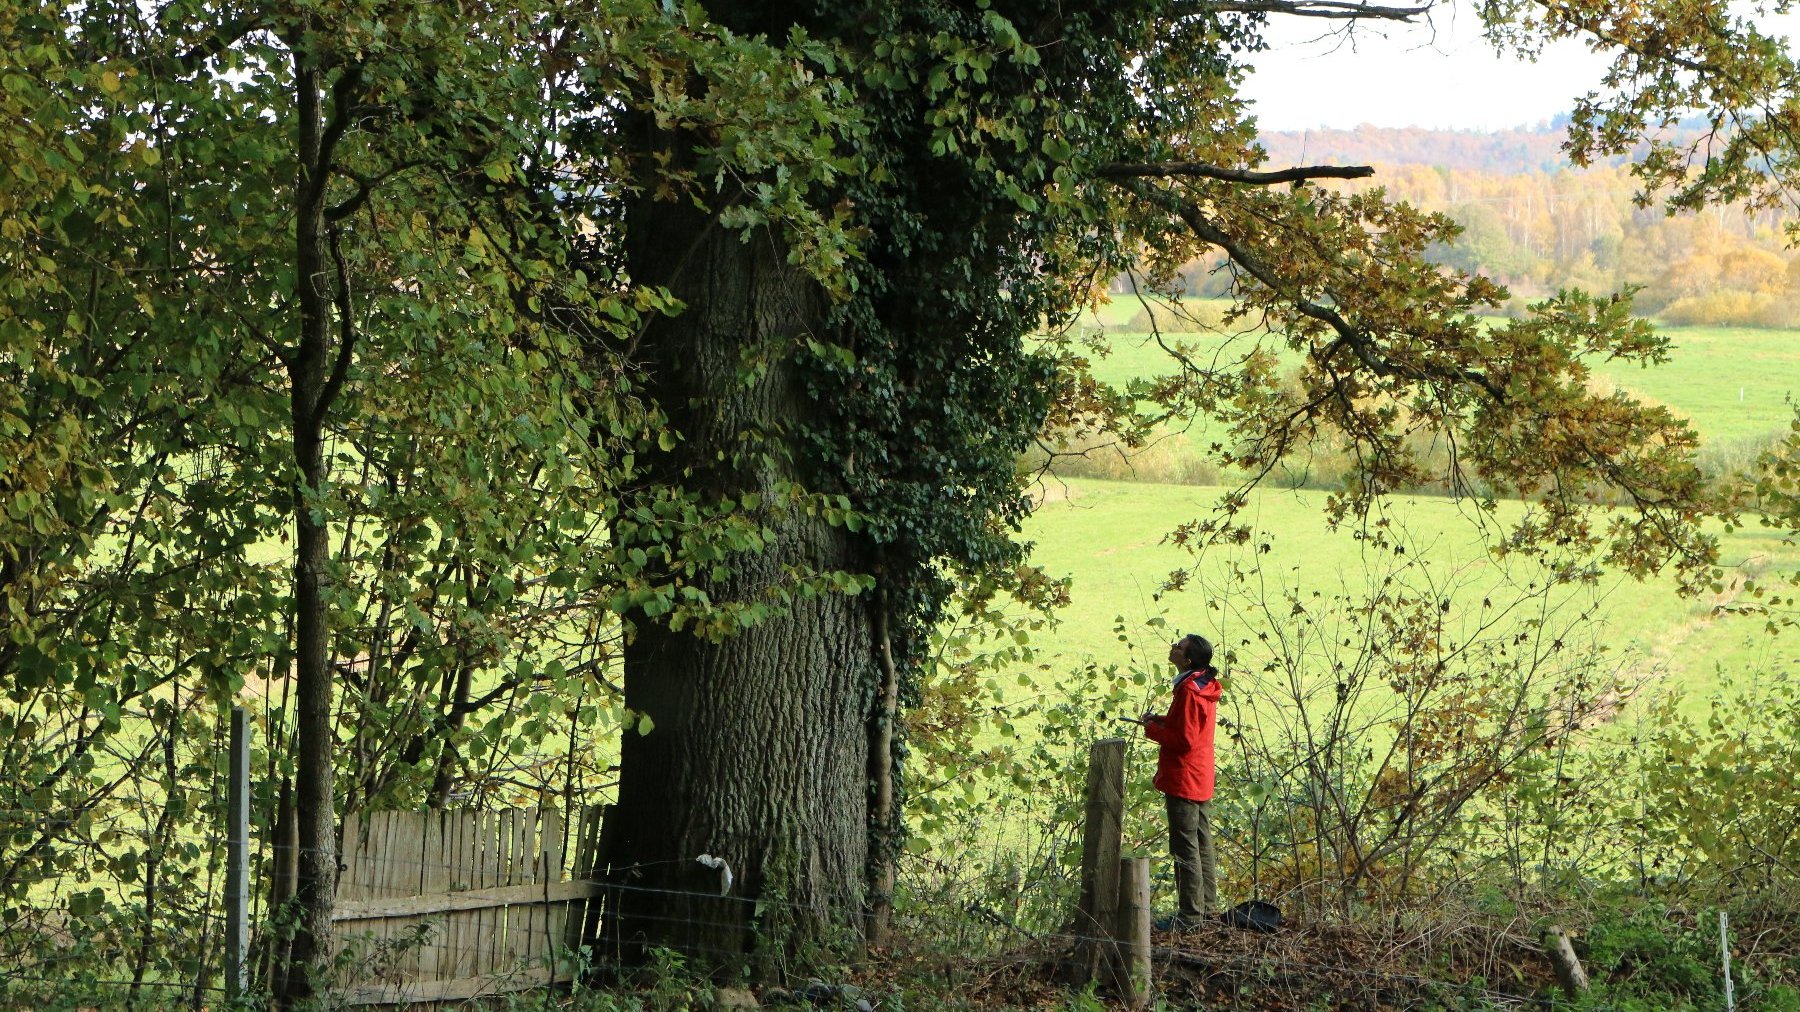 Zdjęcie przedstawia osobę stojącą przy drzewie